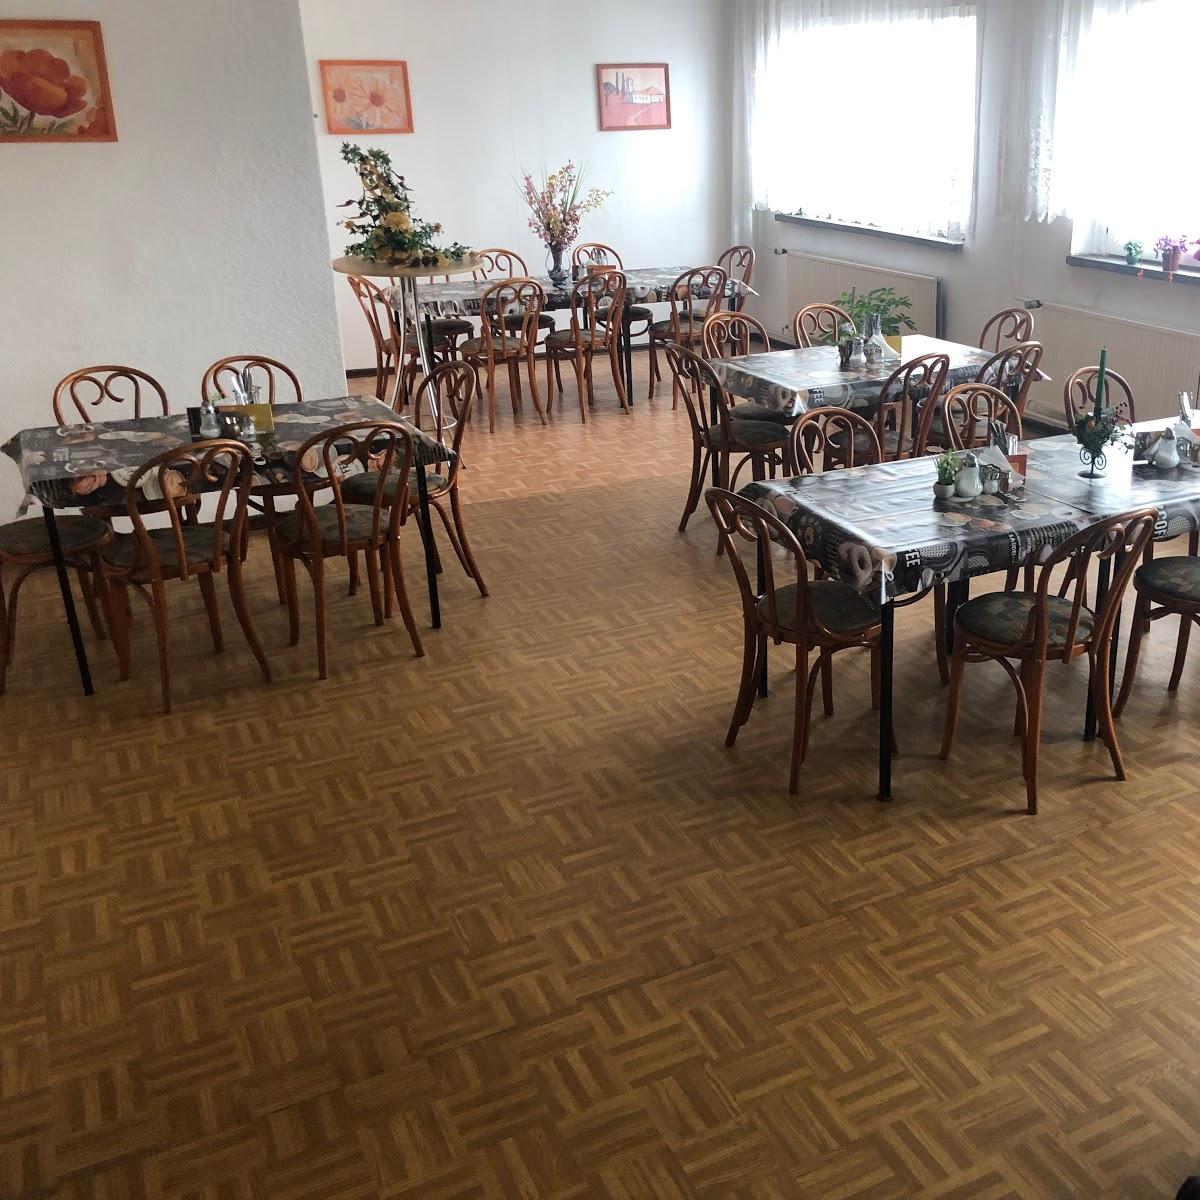 Restaurant "Bistro Dali" in Ilmenau